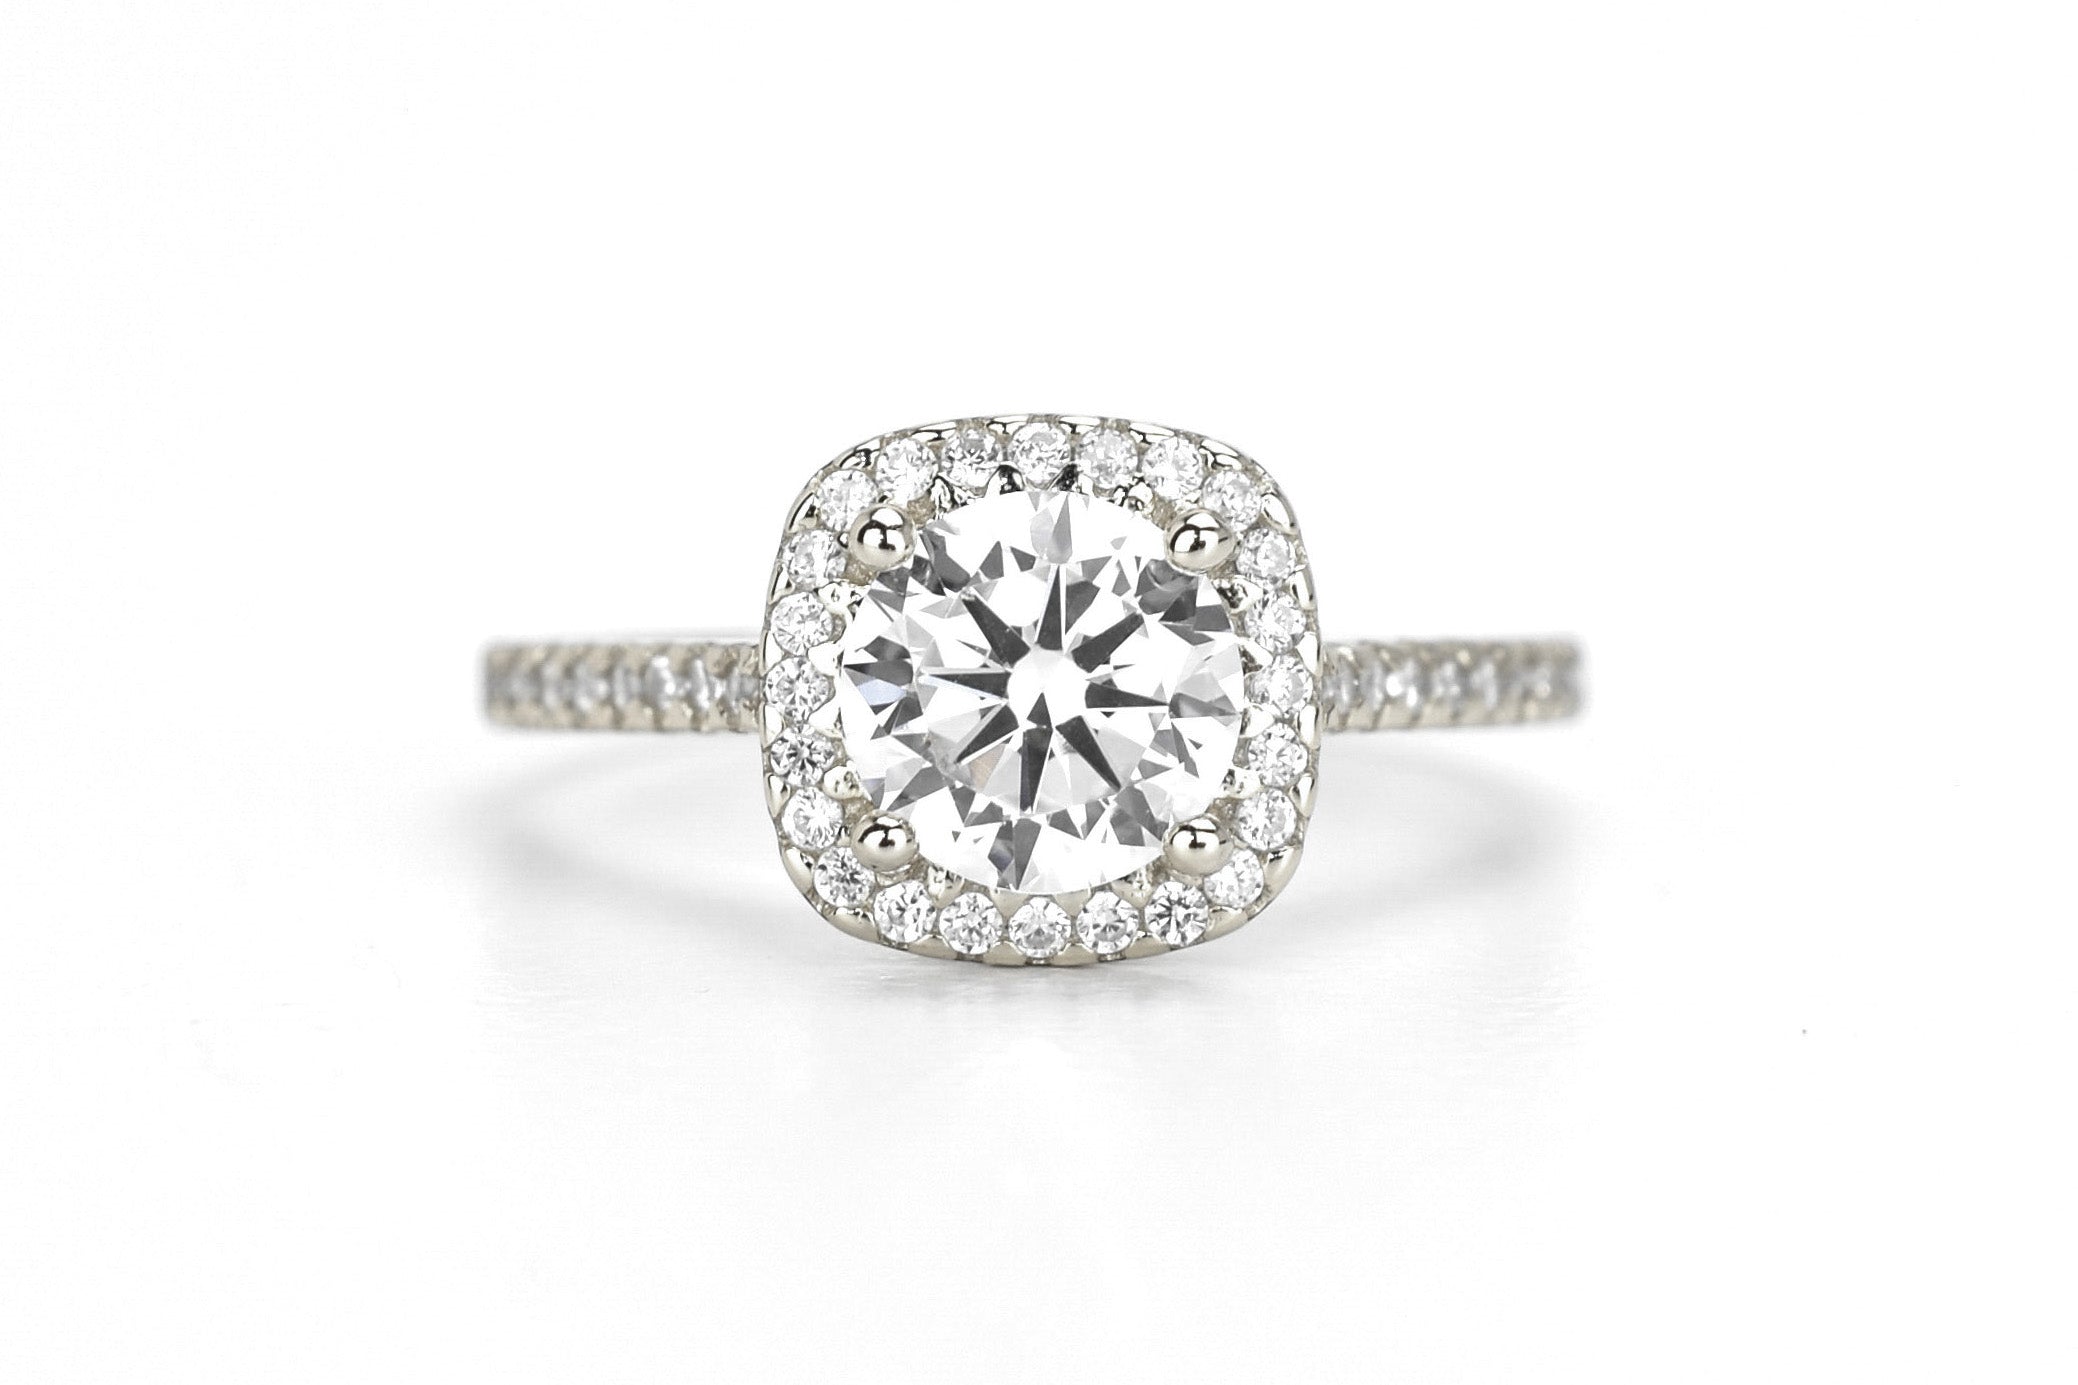 Zilveren halo ring, vierkante halo ring, verlovingsring, ring diamant, 925 zilveren ring, cadeau voor haar, ring met stenen, stapelring zilver, verona, bemyjewels